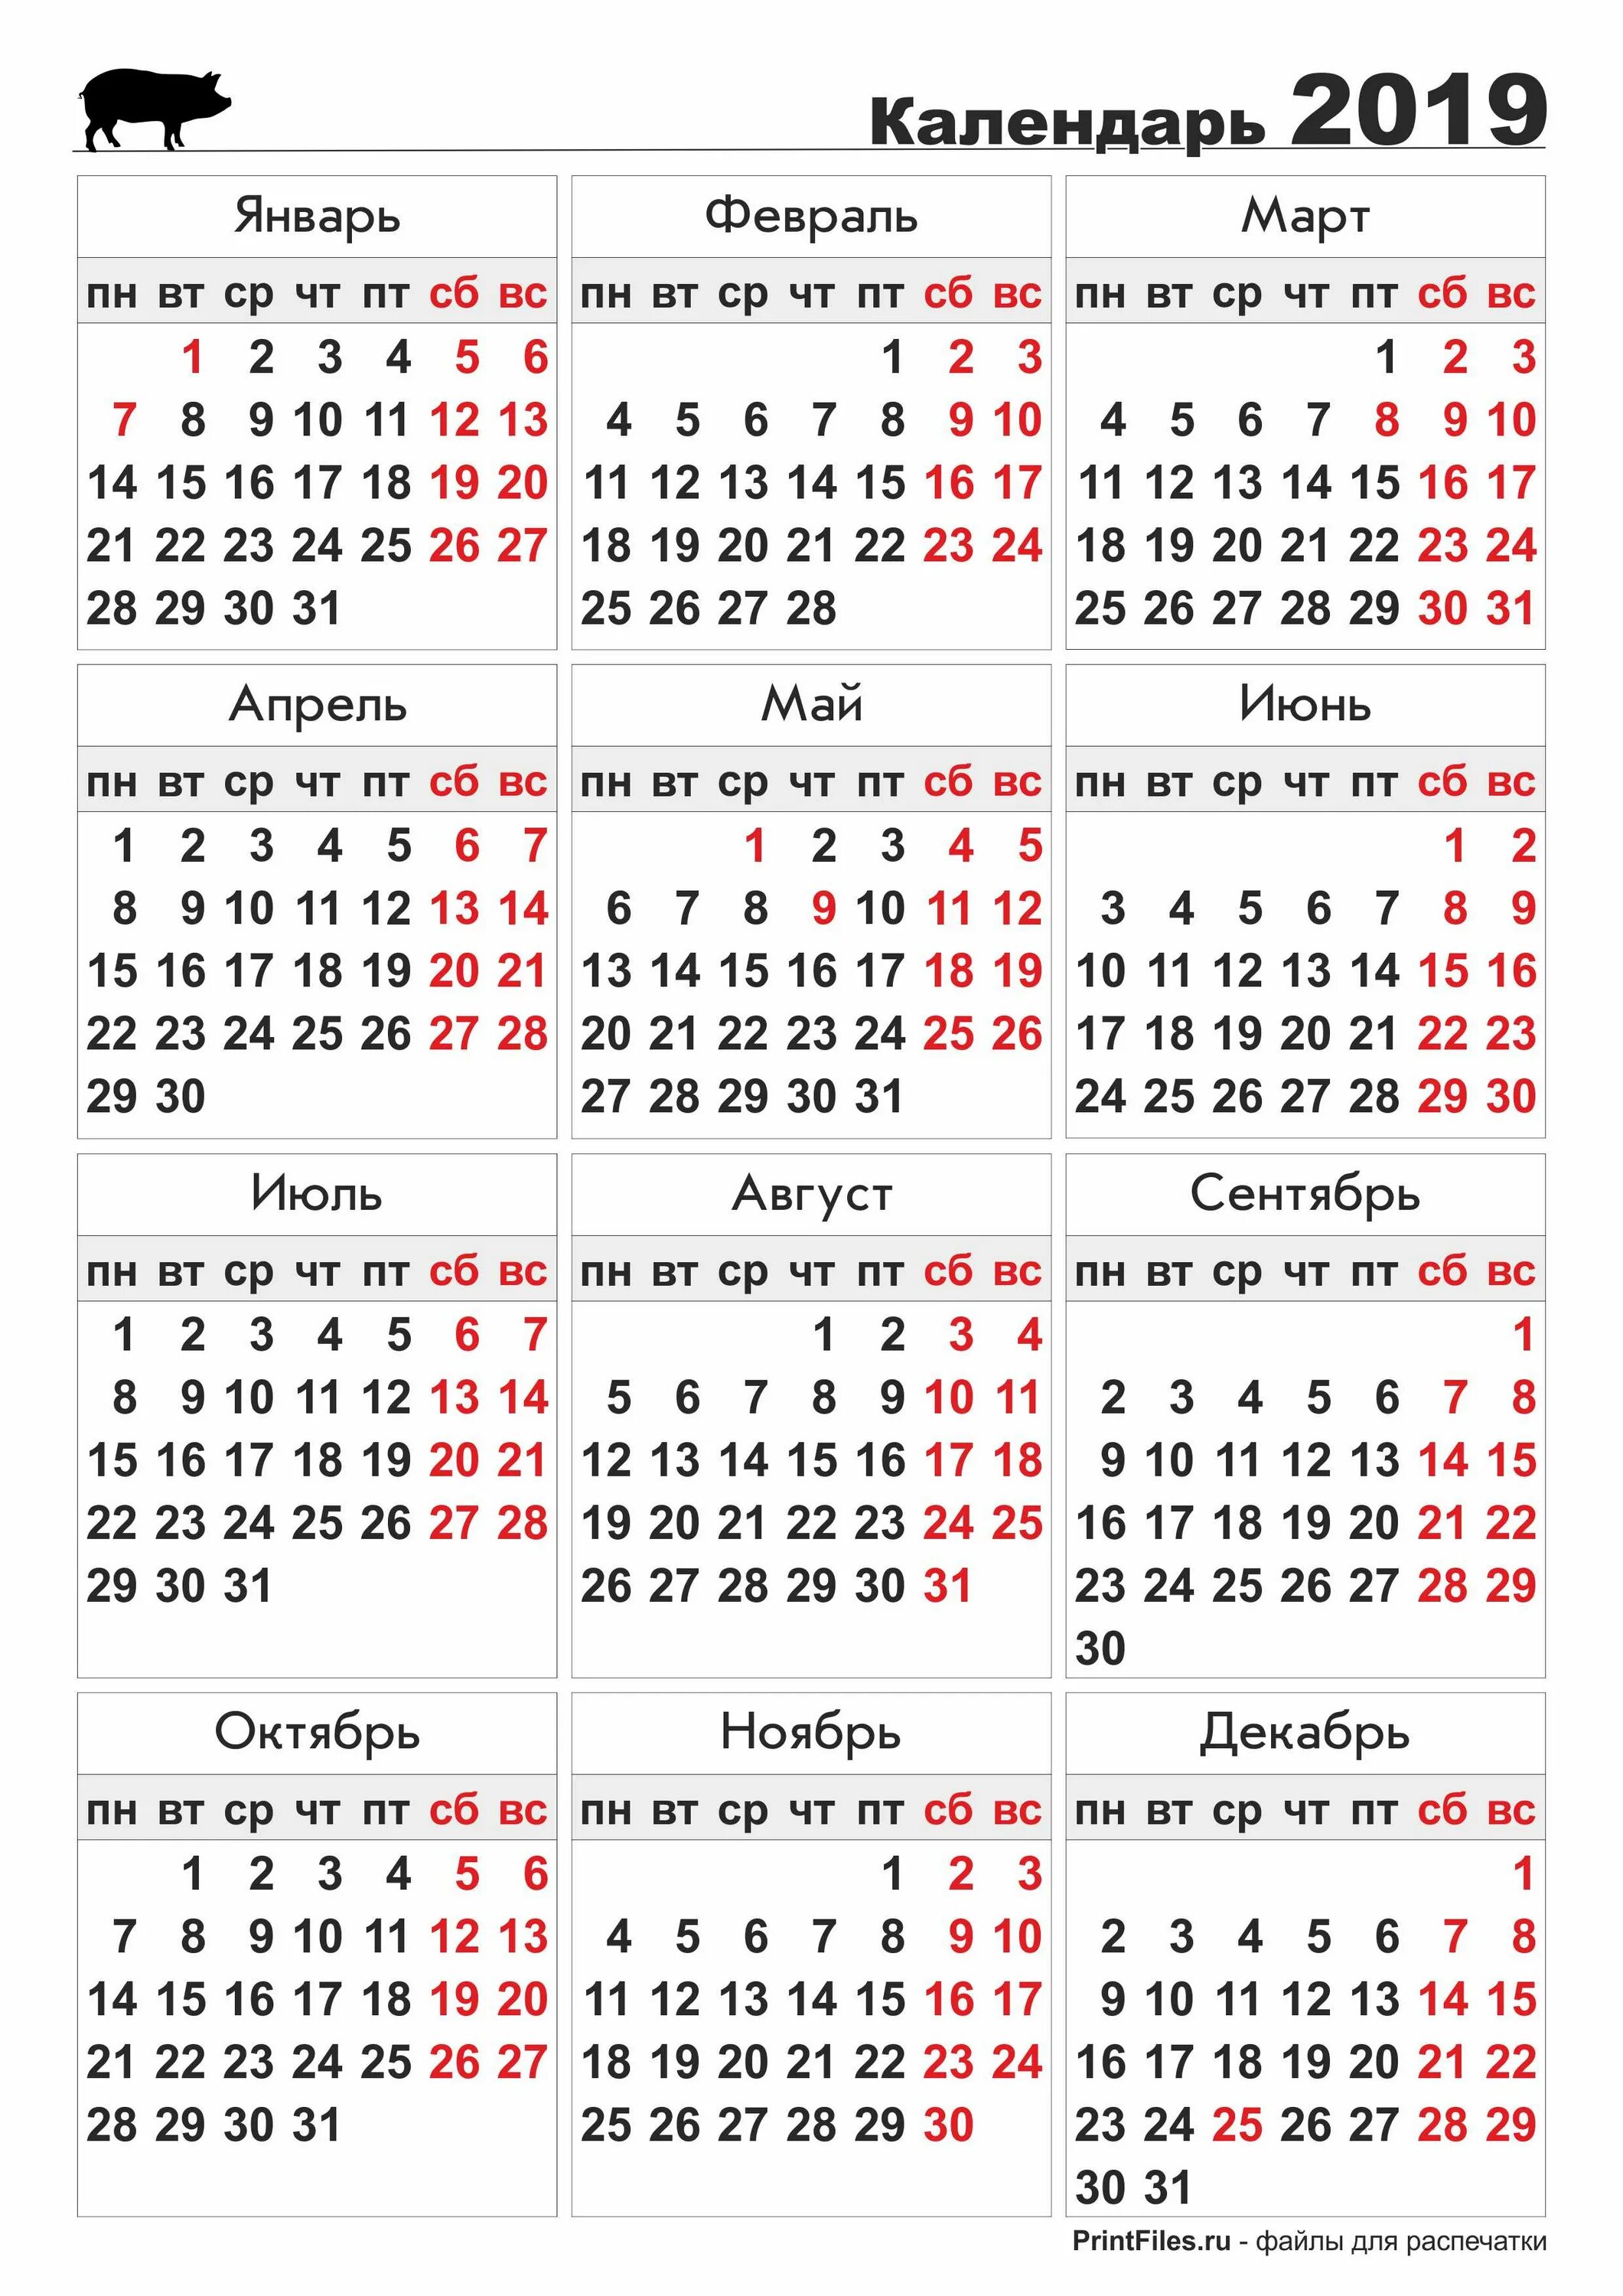 Календарь 2019 год праздники. Календарь. Календарь 2019 года. Календарь 2019 печать. Календарь 2019 года по месяцам.